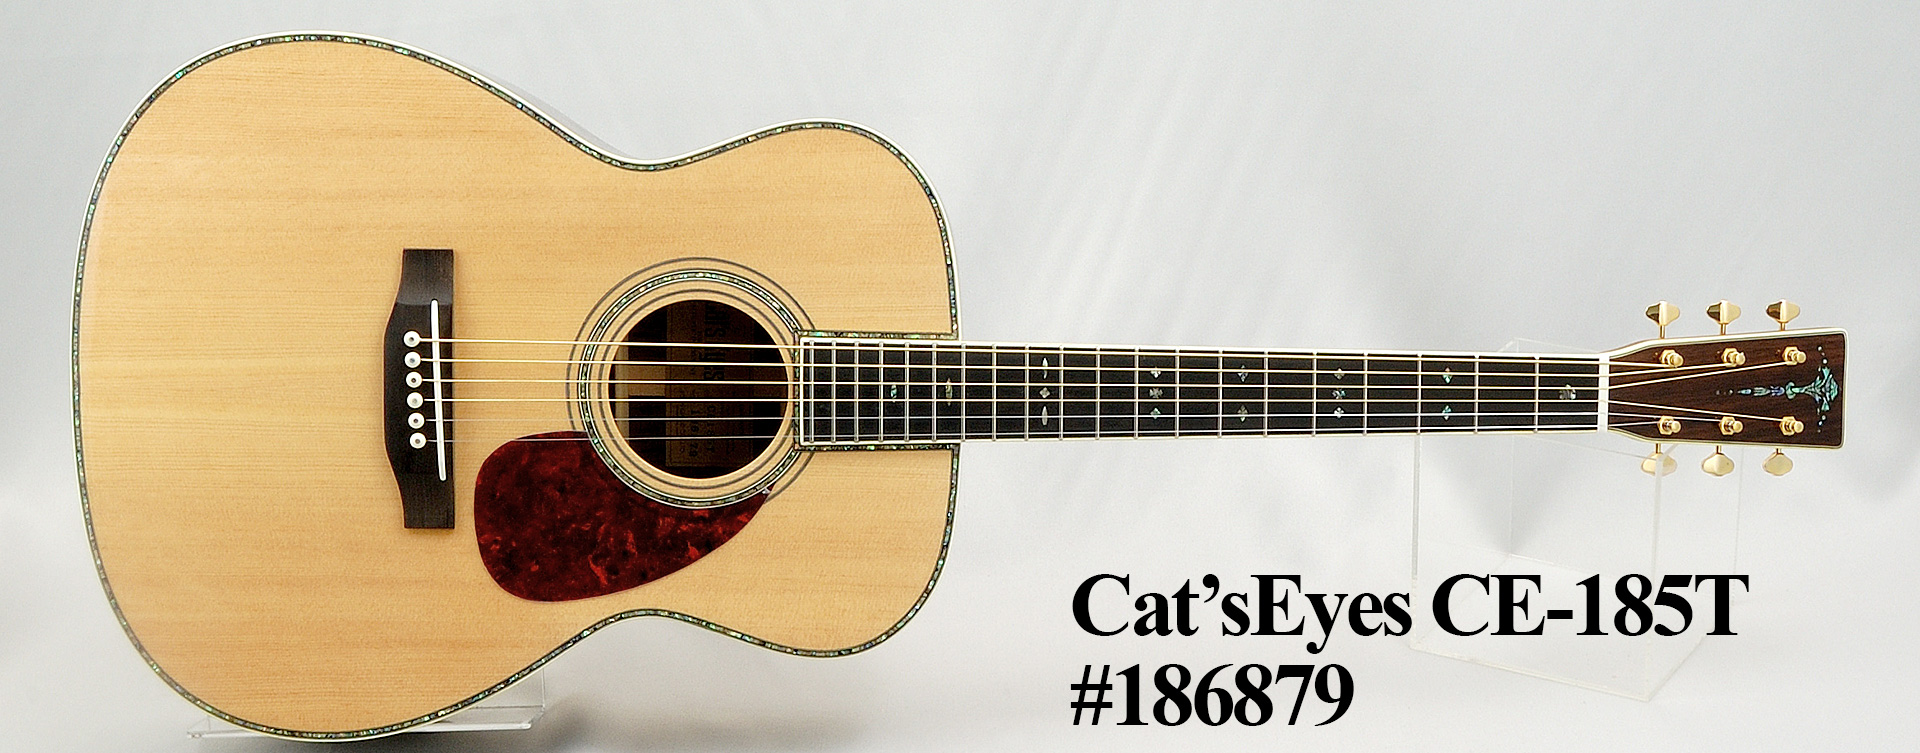 Cat'sEyes/CE185T 【しっかりしたボディ鳴りと厚みのあるサウンド 